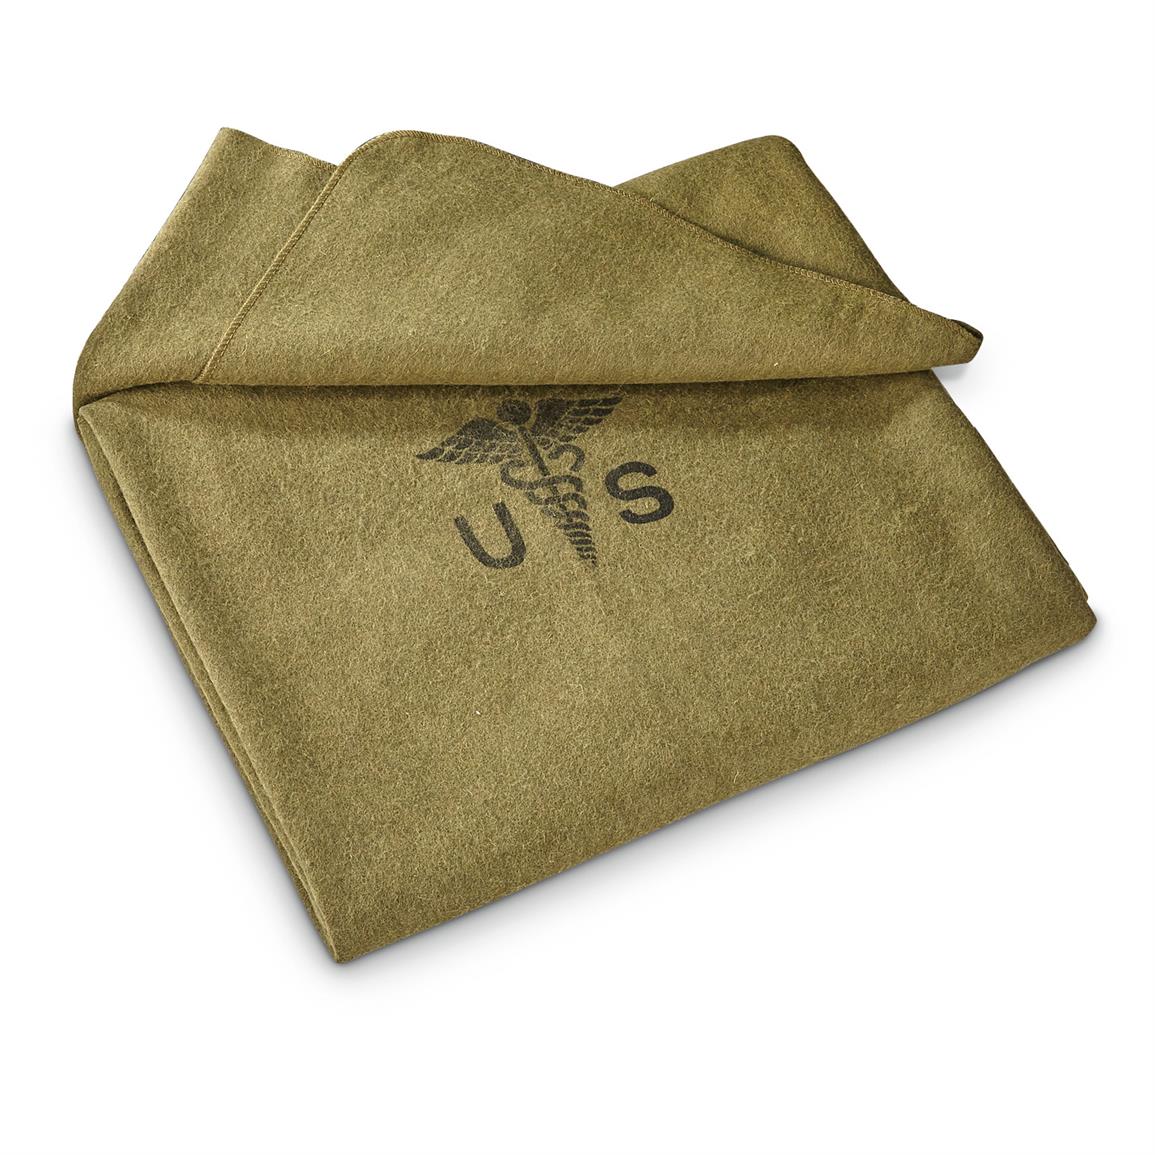 Army Surplus Wool Blanket - Army Military